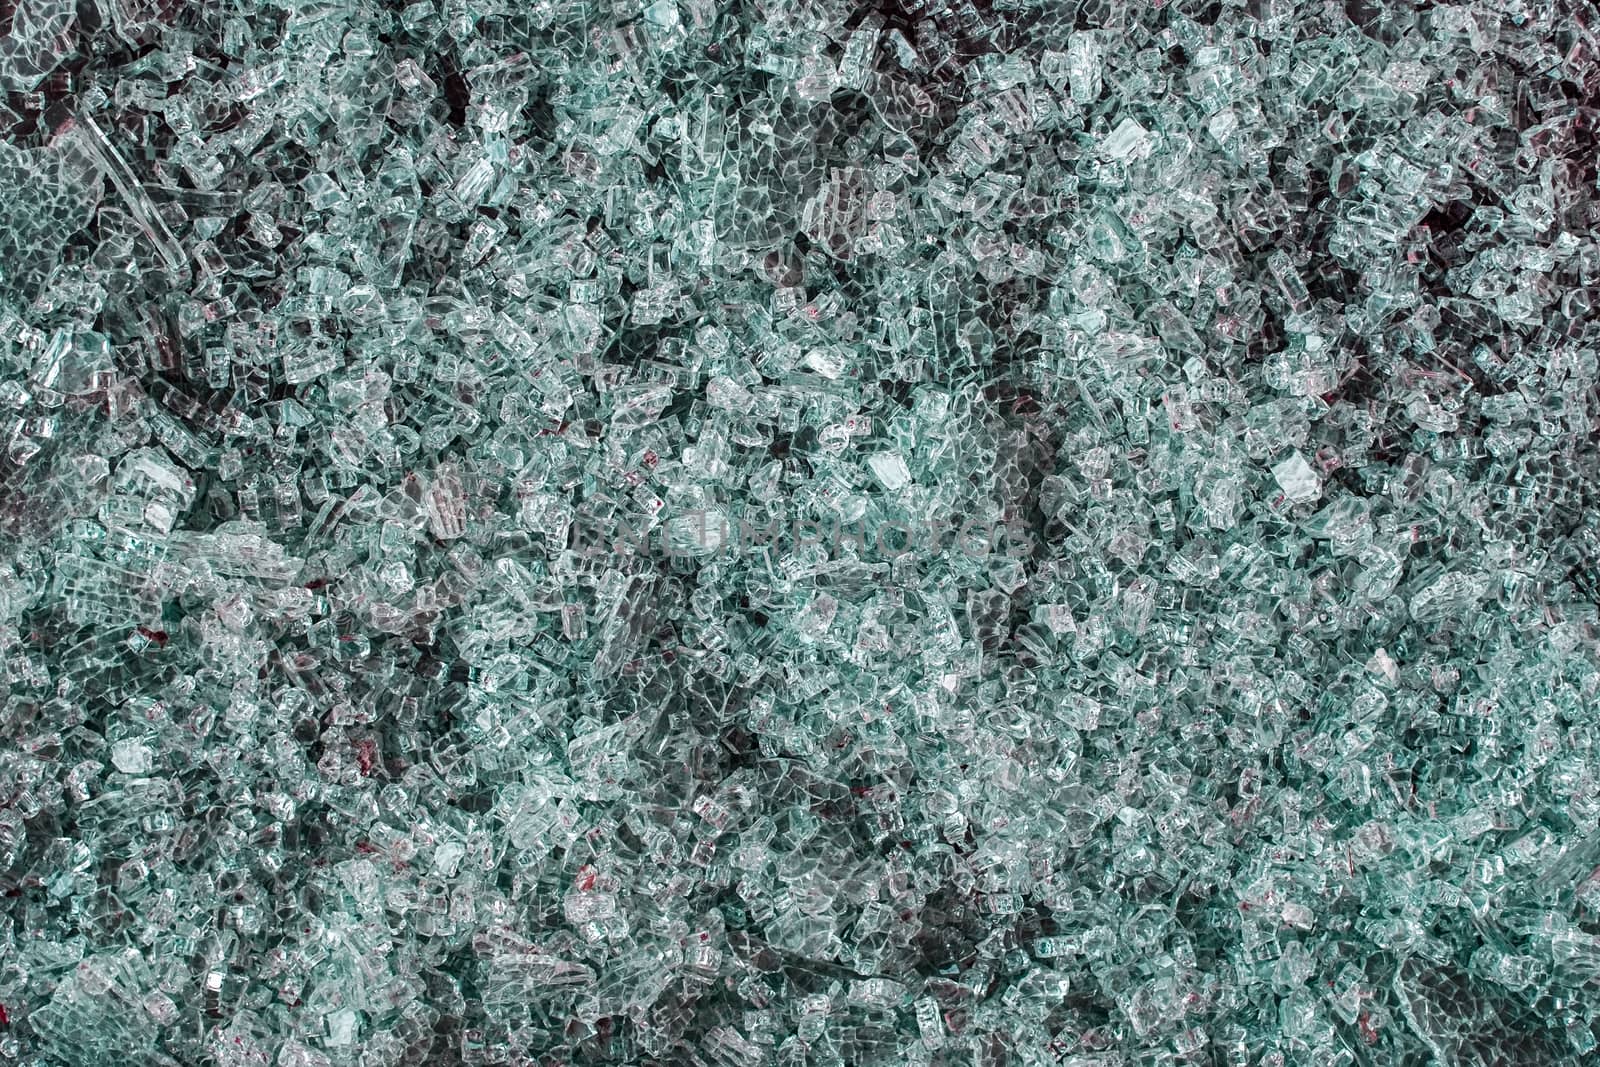 A pile of broken green glass